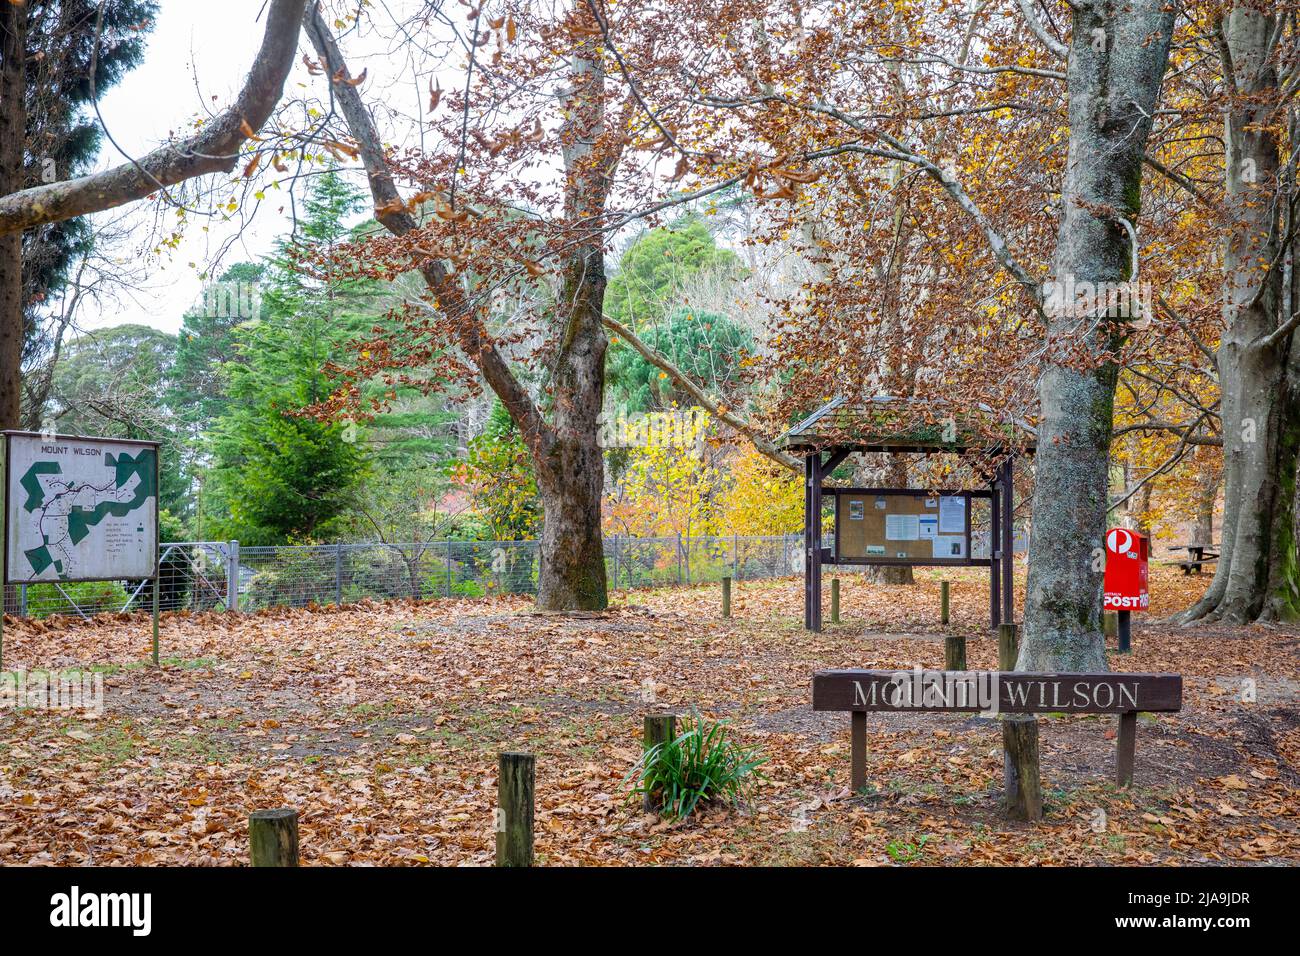 Mount Wilson nella regione delle Blue Mountains un villaggio giardino patrimonio popolare per il colore delle foglie autunnali con turisti, NSW, Australia Foto Stock